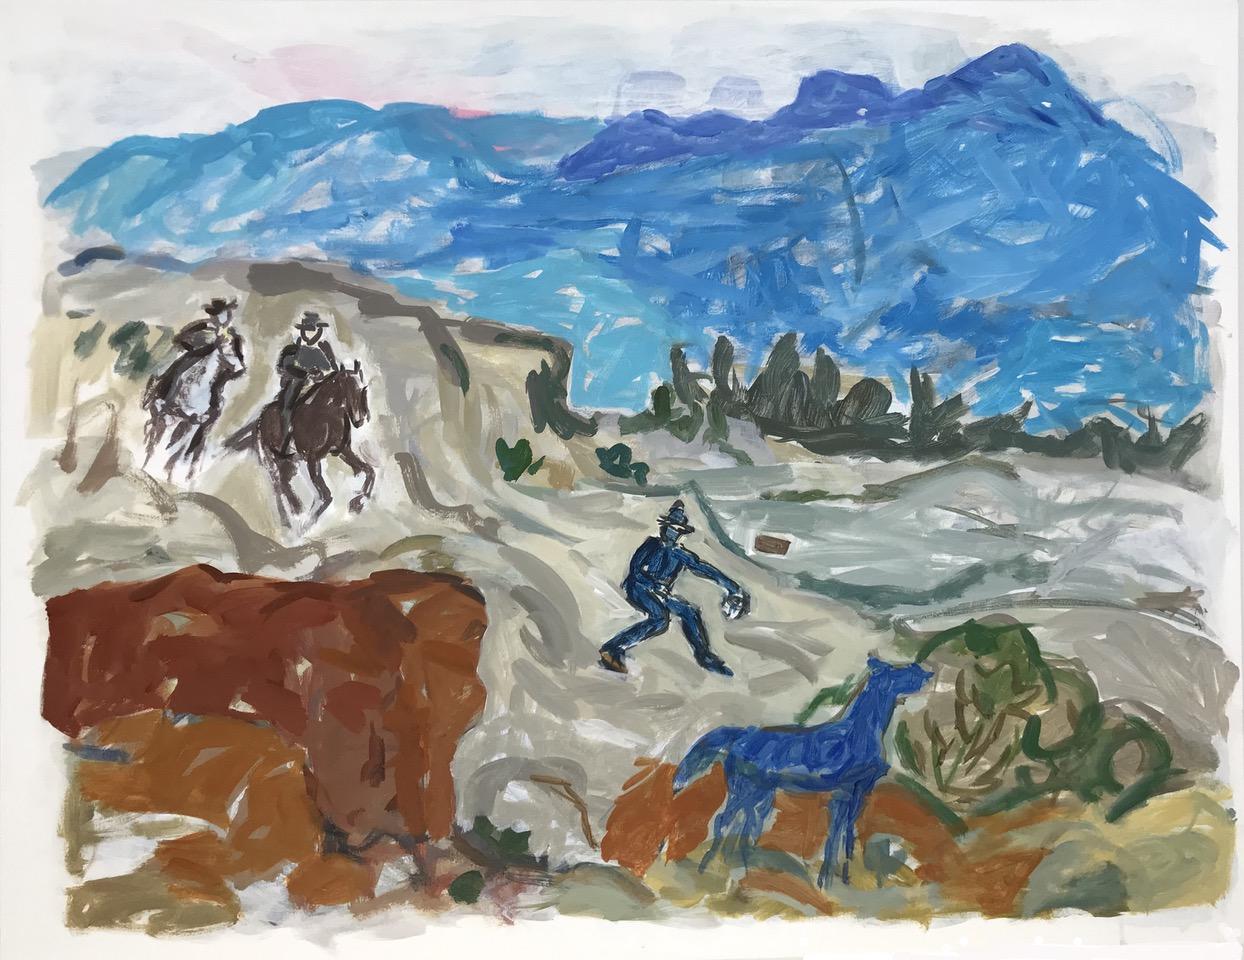 Scène de cow-boy impressionniste abstraite contemporaine d'un paysage de l'Ouest avec cheval 